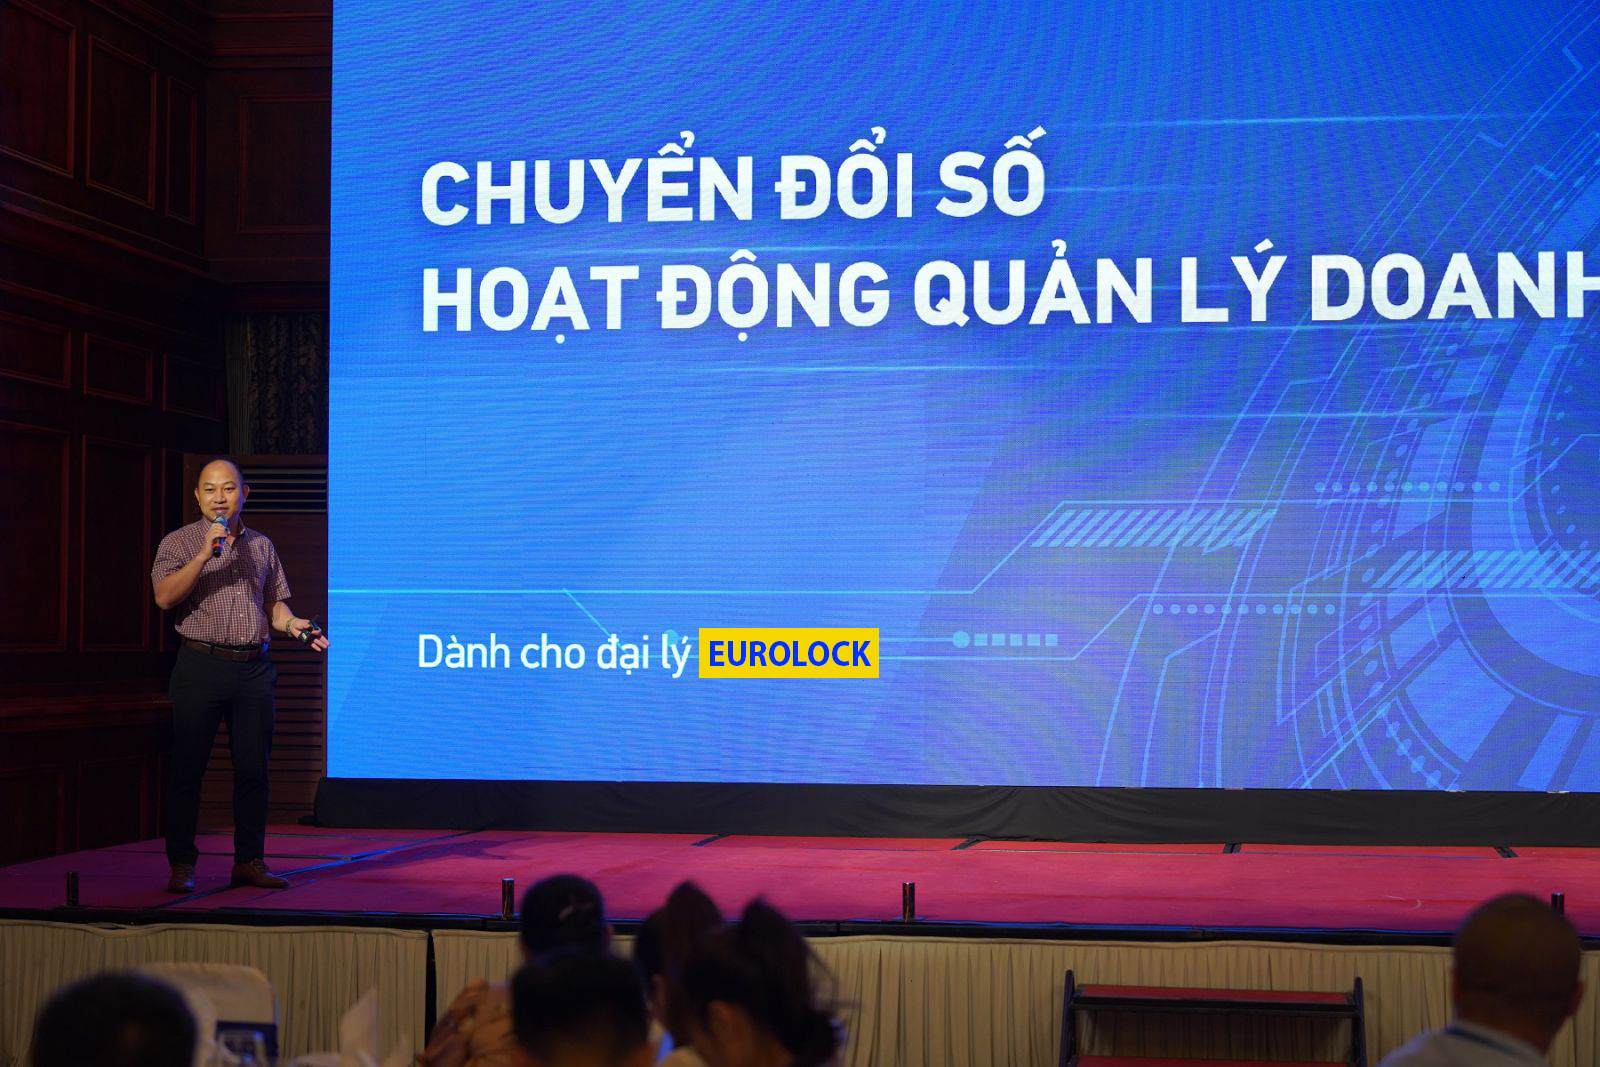 Chuyển đổi số cho thế hệ khóa cửa điện tử mới an toàn & thông minh vượt trội tại Việt nam